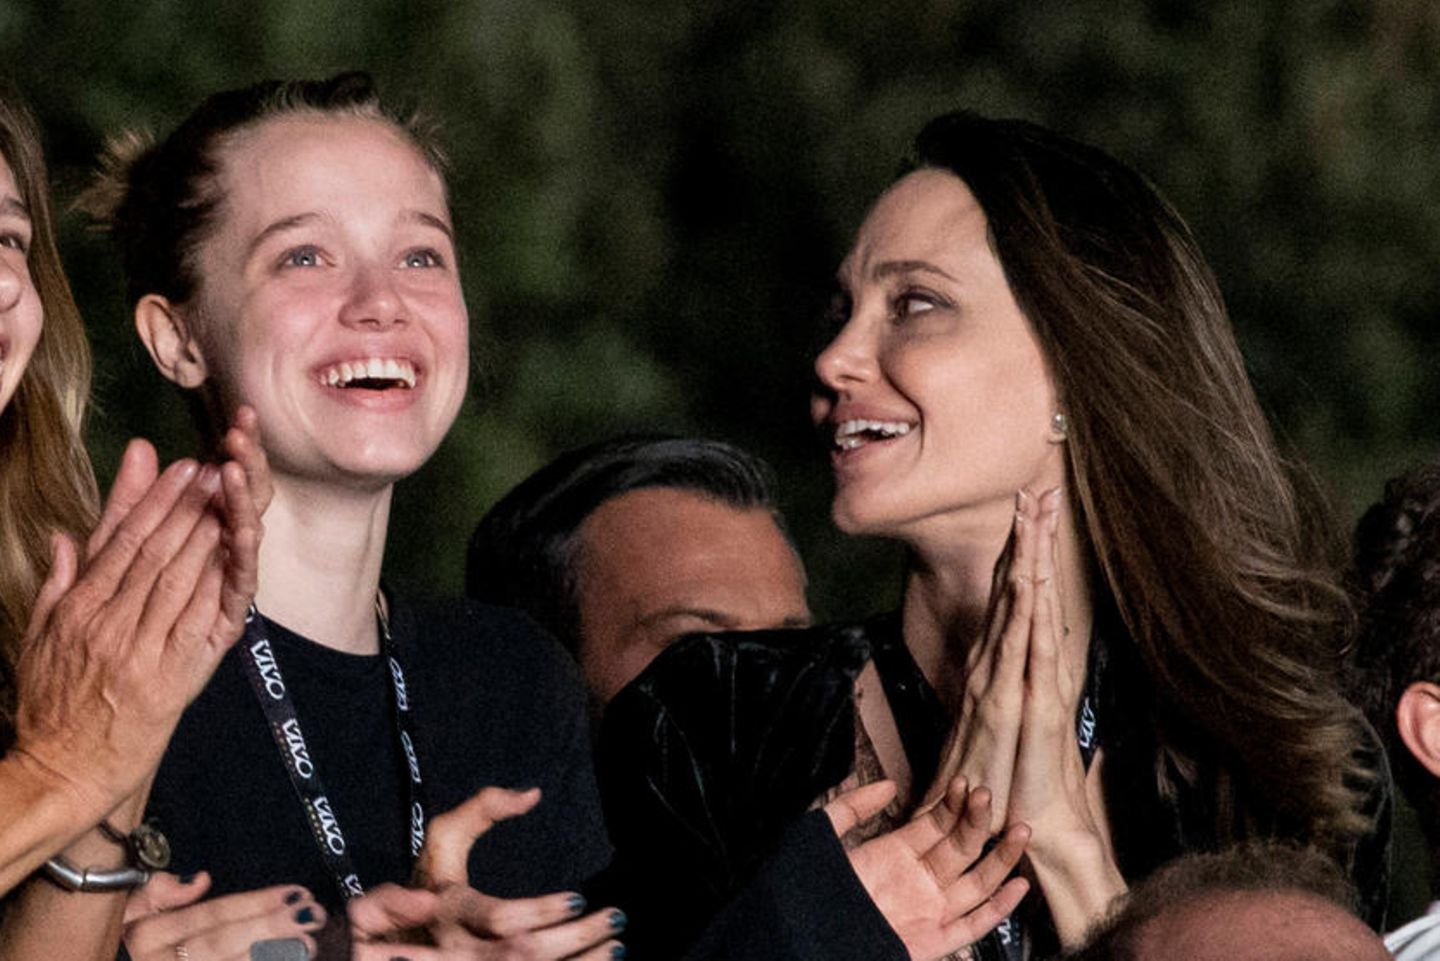 Папина внешность, мамина улыбка: 16-летняя дочь Джоли и Питта покорила красотой во время редкого выхода в свет